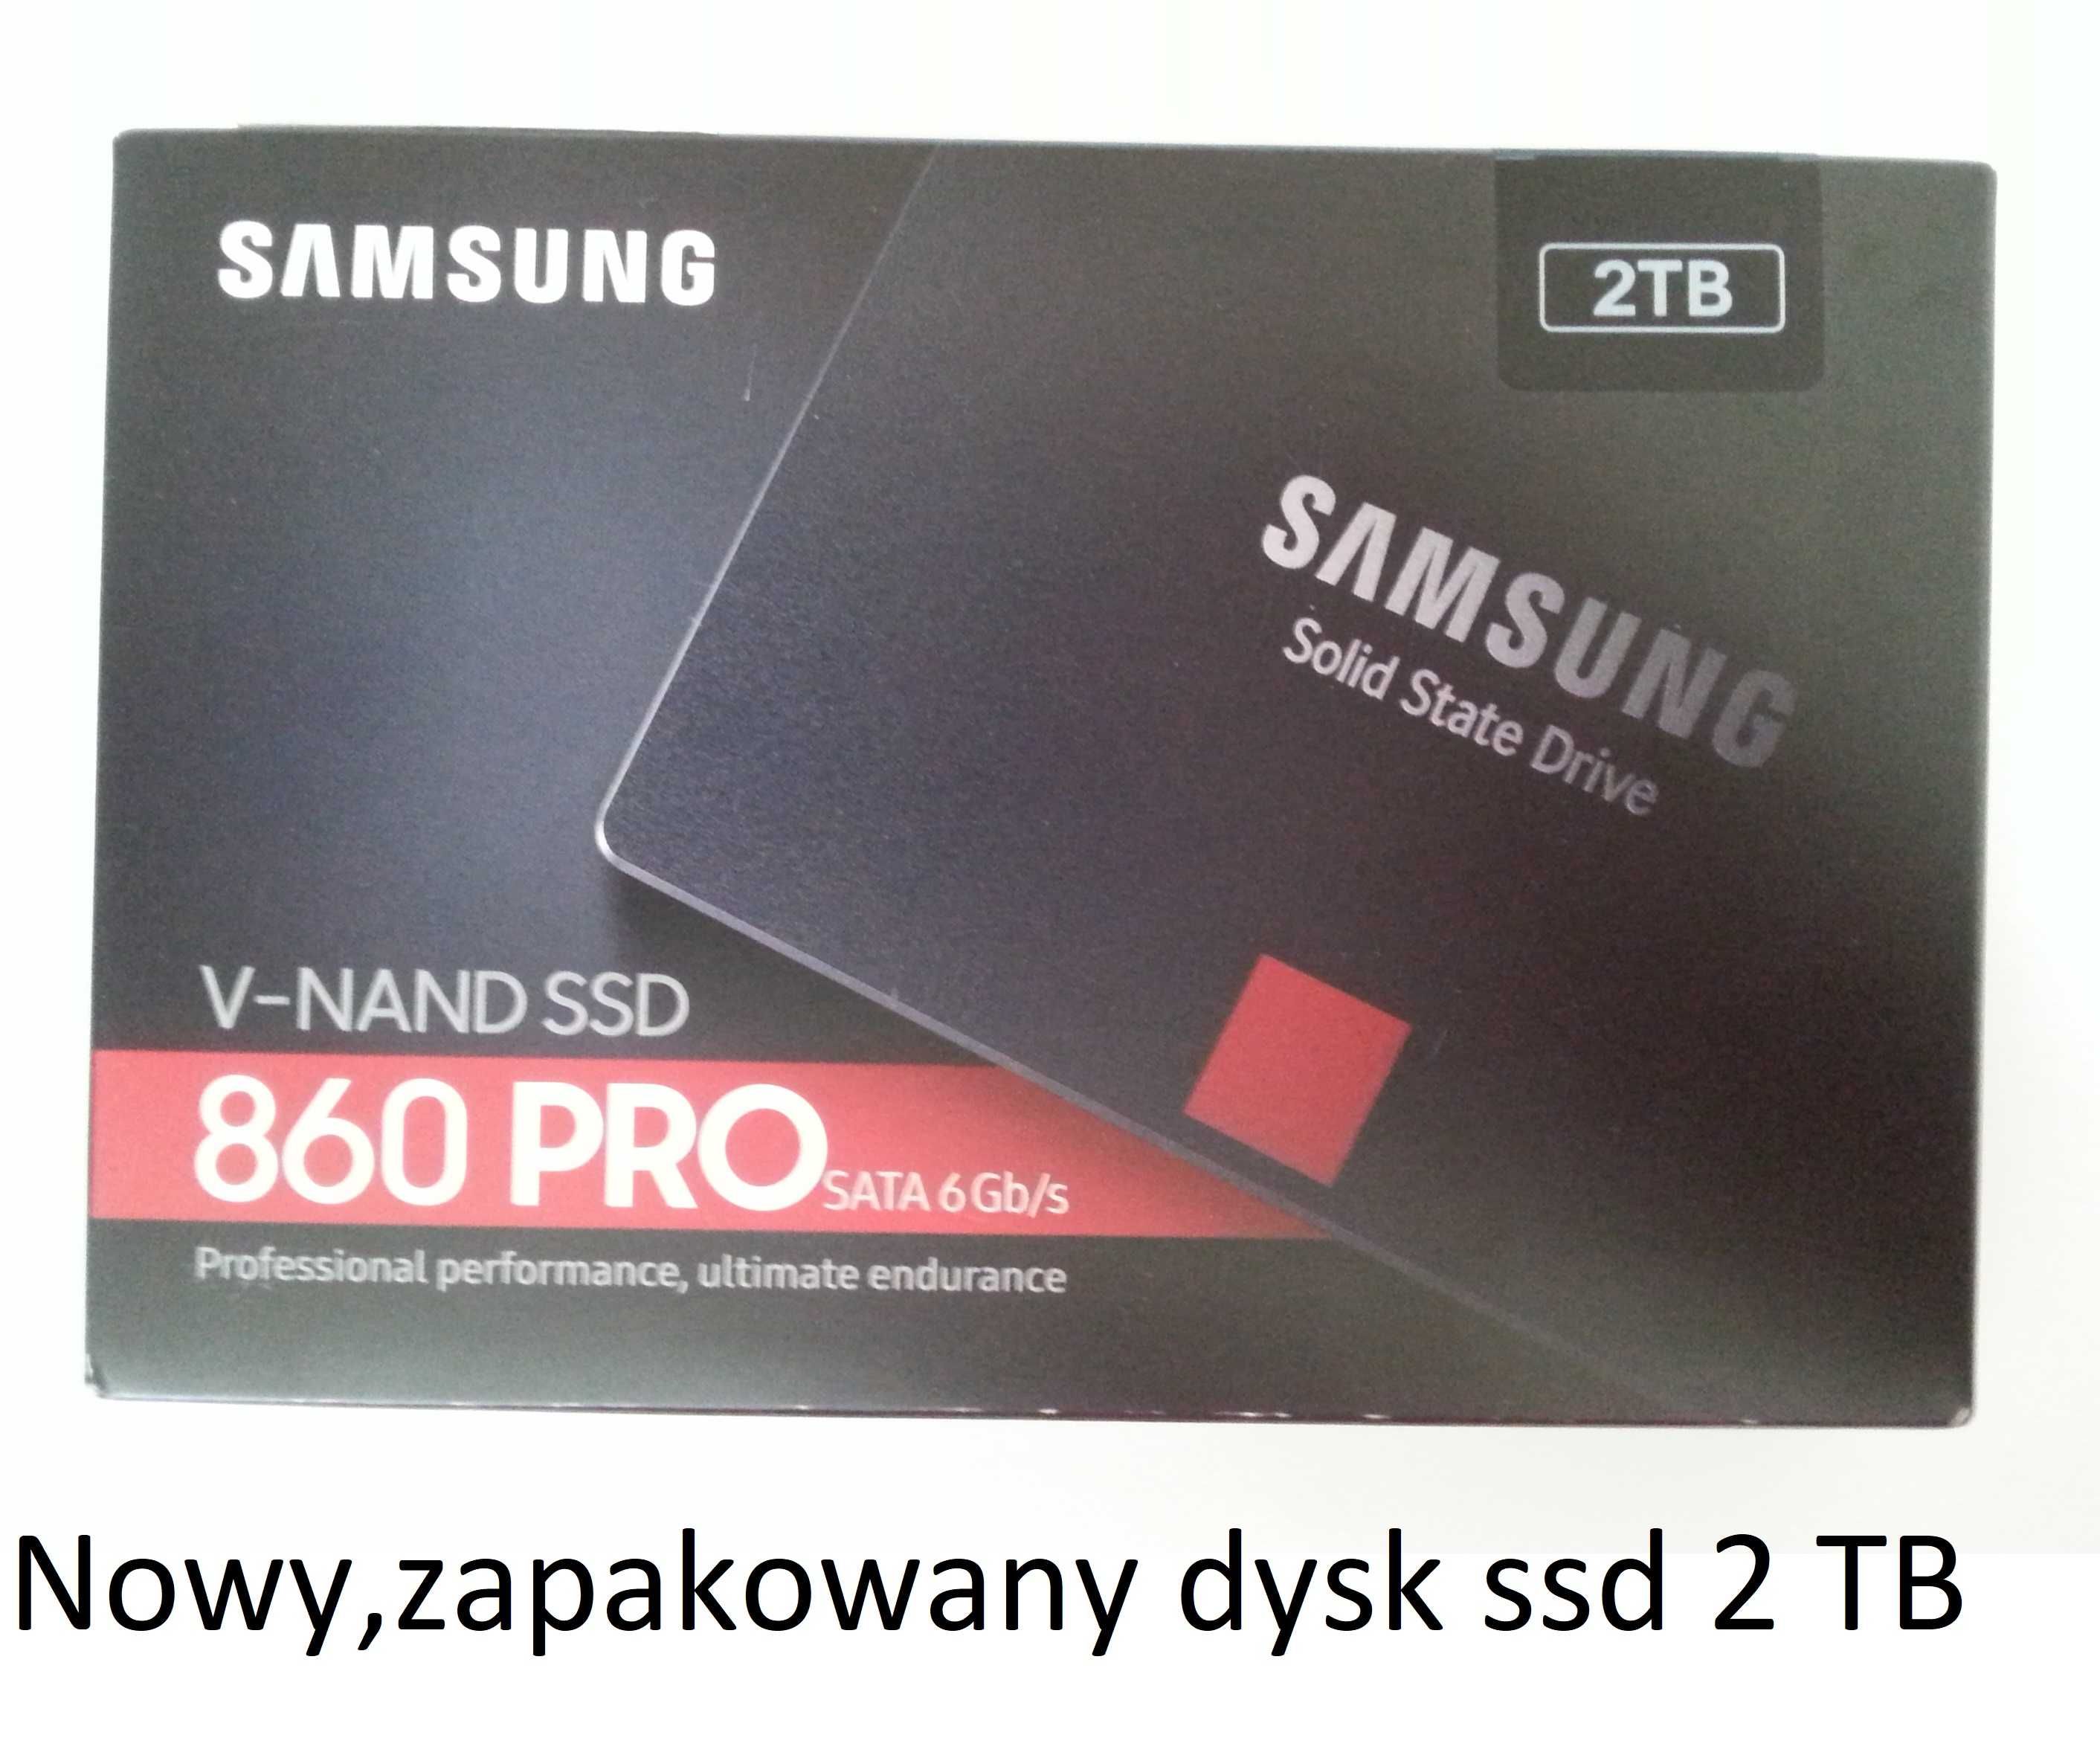 Samsung-stan idealny-256gb dysk ssd- oraz inne- sprawdź dostępność.